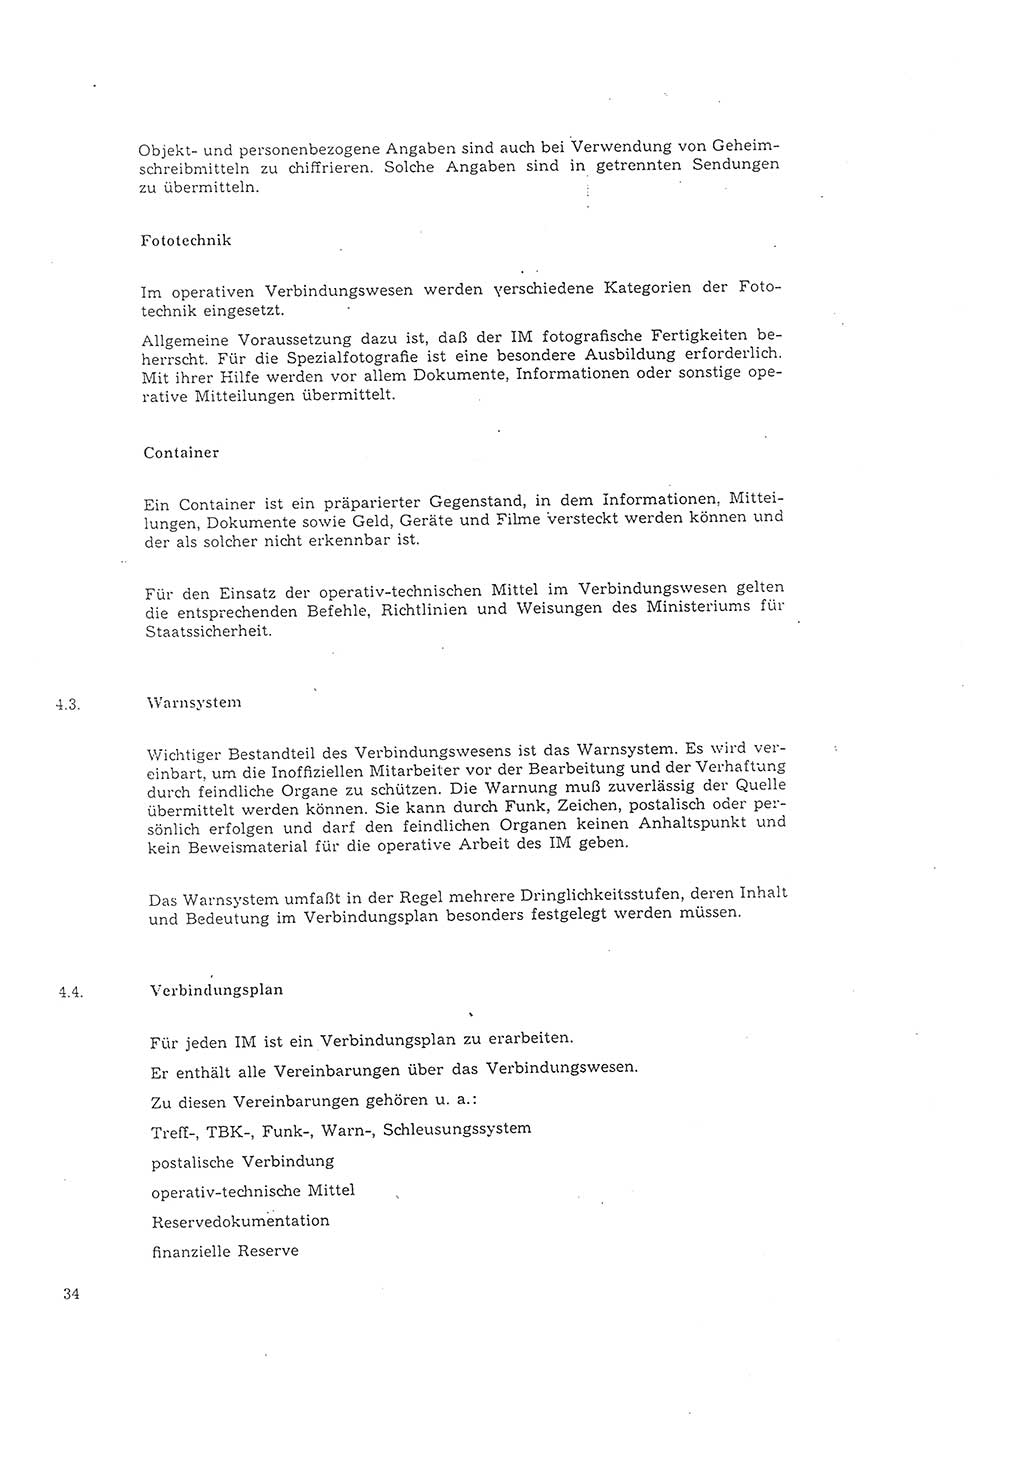 Richtlinie 2/68 für die Arbeit mit Inoffiziellen Mitarbeitern (IM) im Operationsgebiet, Deutsche Demokratische Republik (DDR), Ministerium für Staatssicherheit (MfS), Der Minister (Mielke), Geheime Verschlußsache (GVS) 008-1002/68, Berlin 1968, Seite 34 (RL 2/68 DDR MfS Min. GVS 008-1002/68 1968, S. 34)